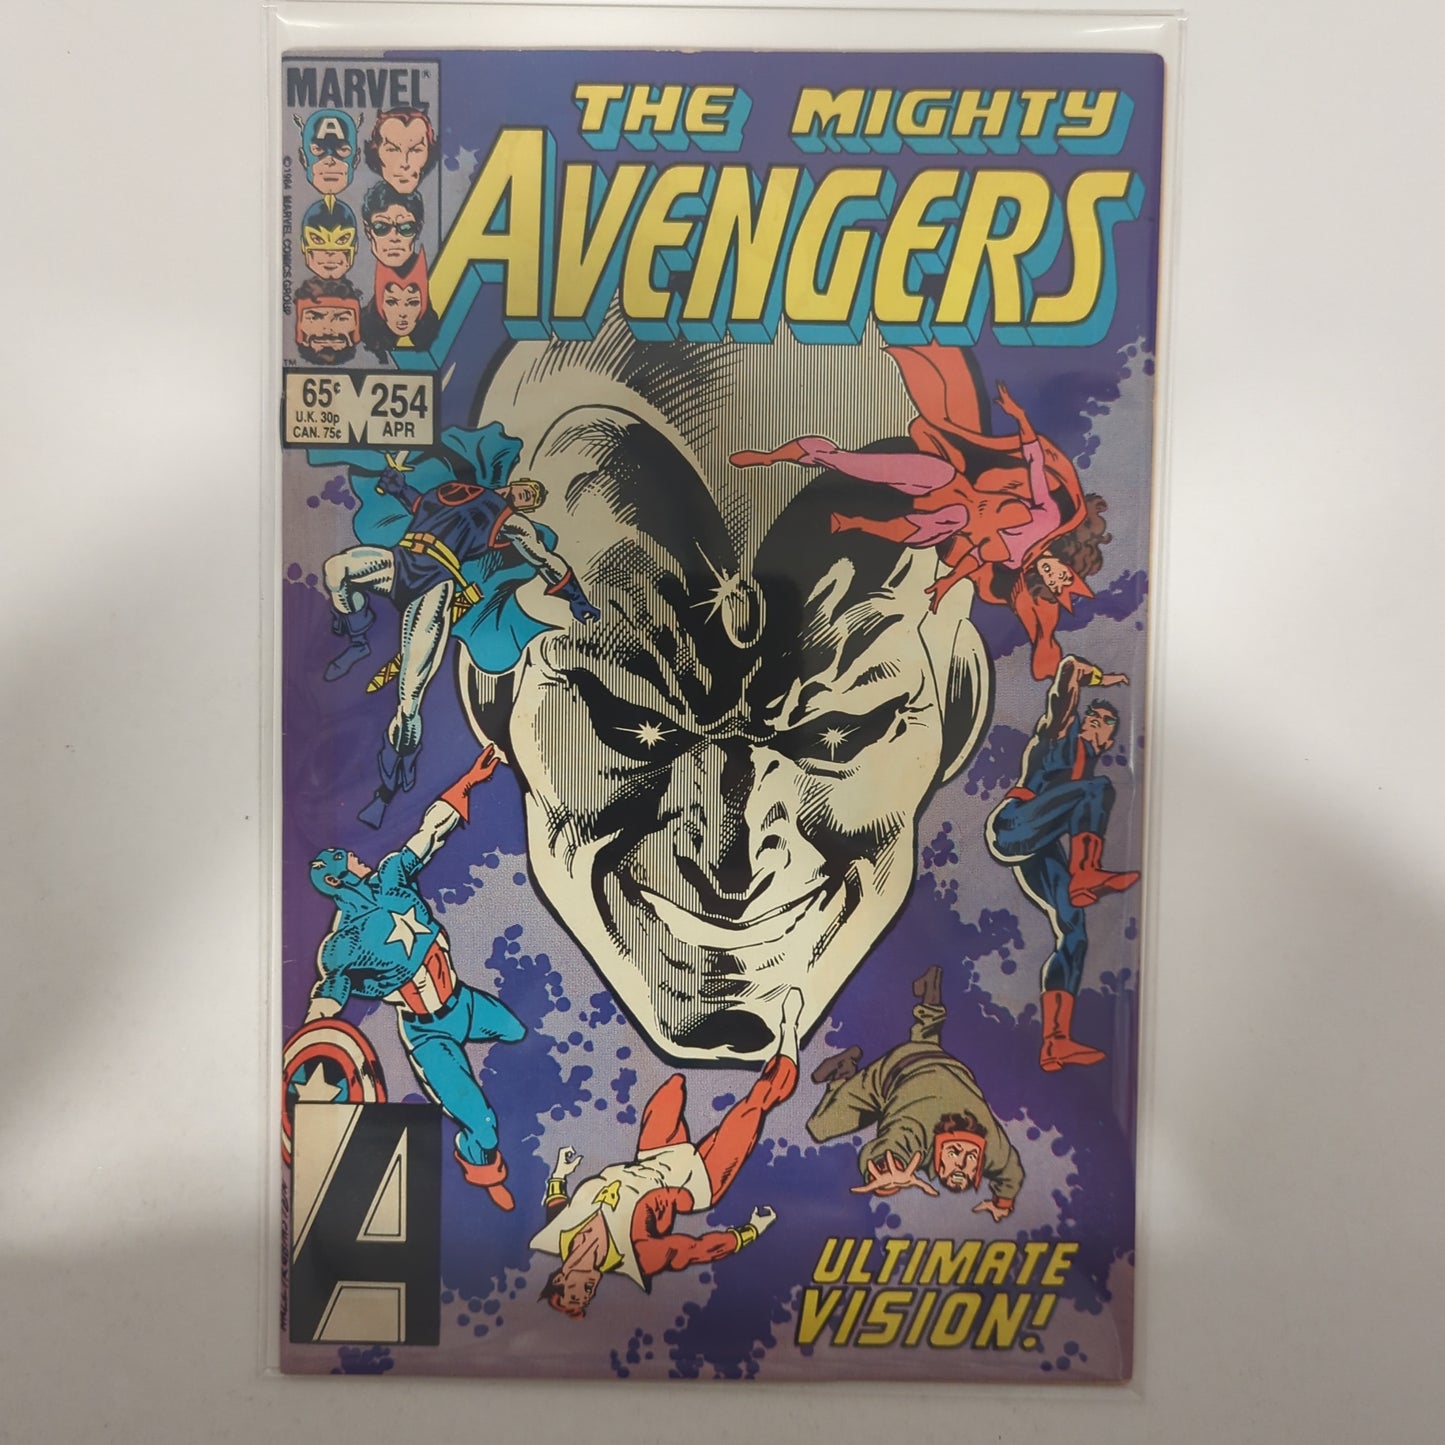 Avengers #254